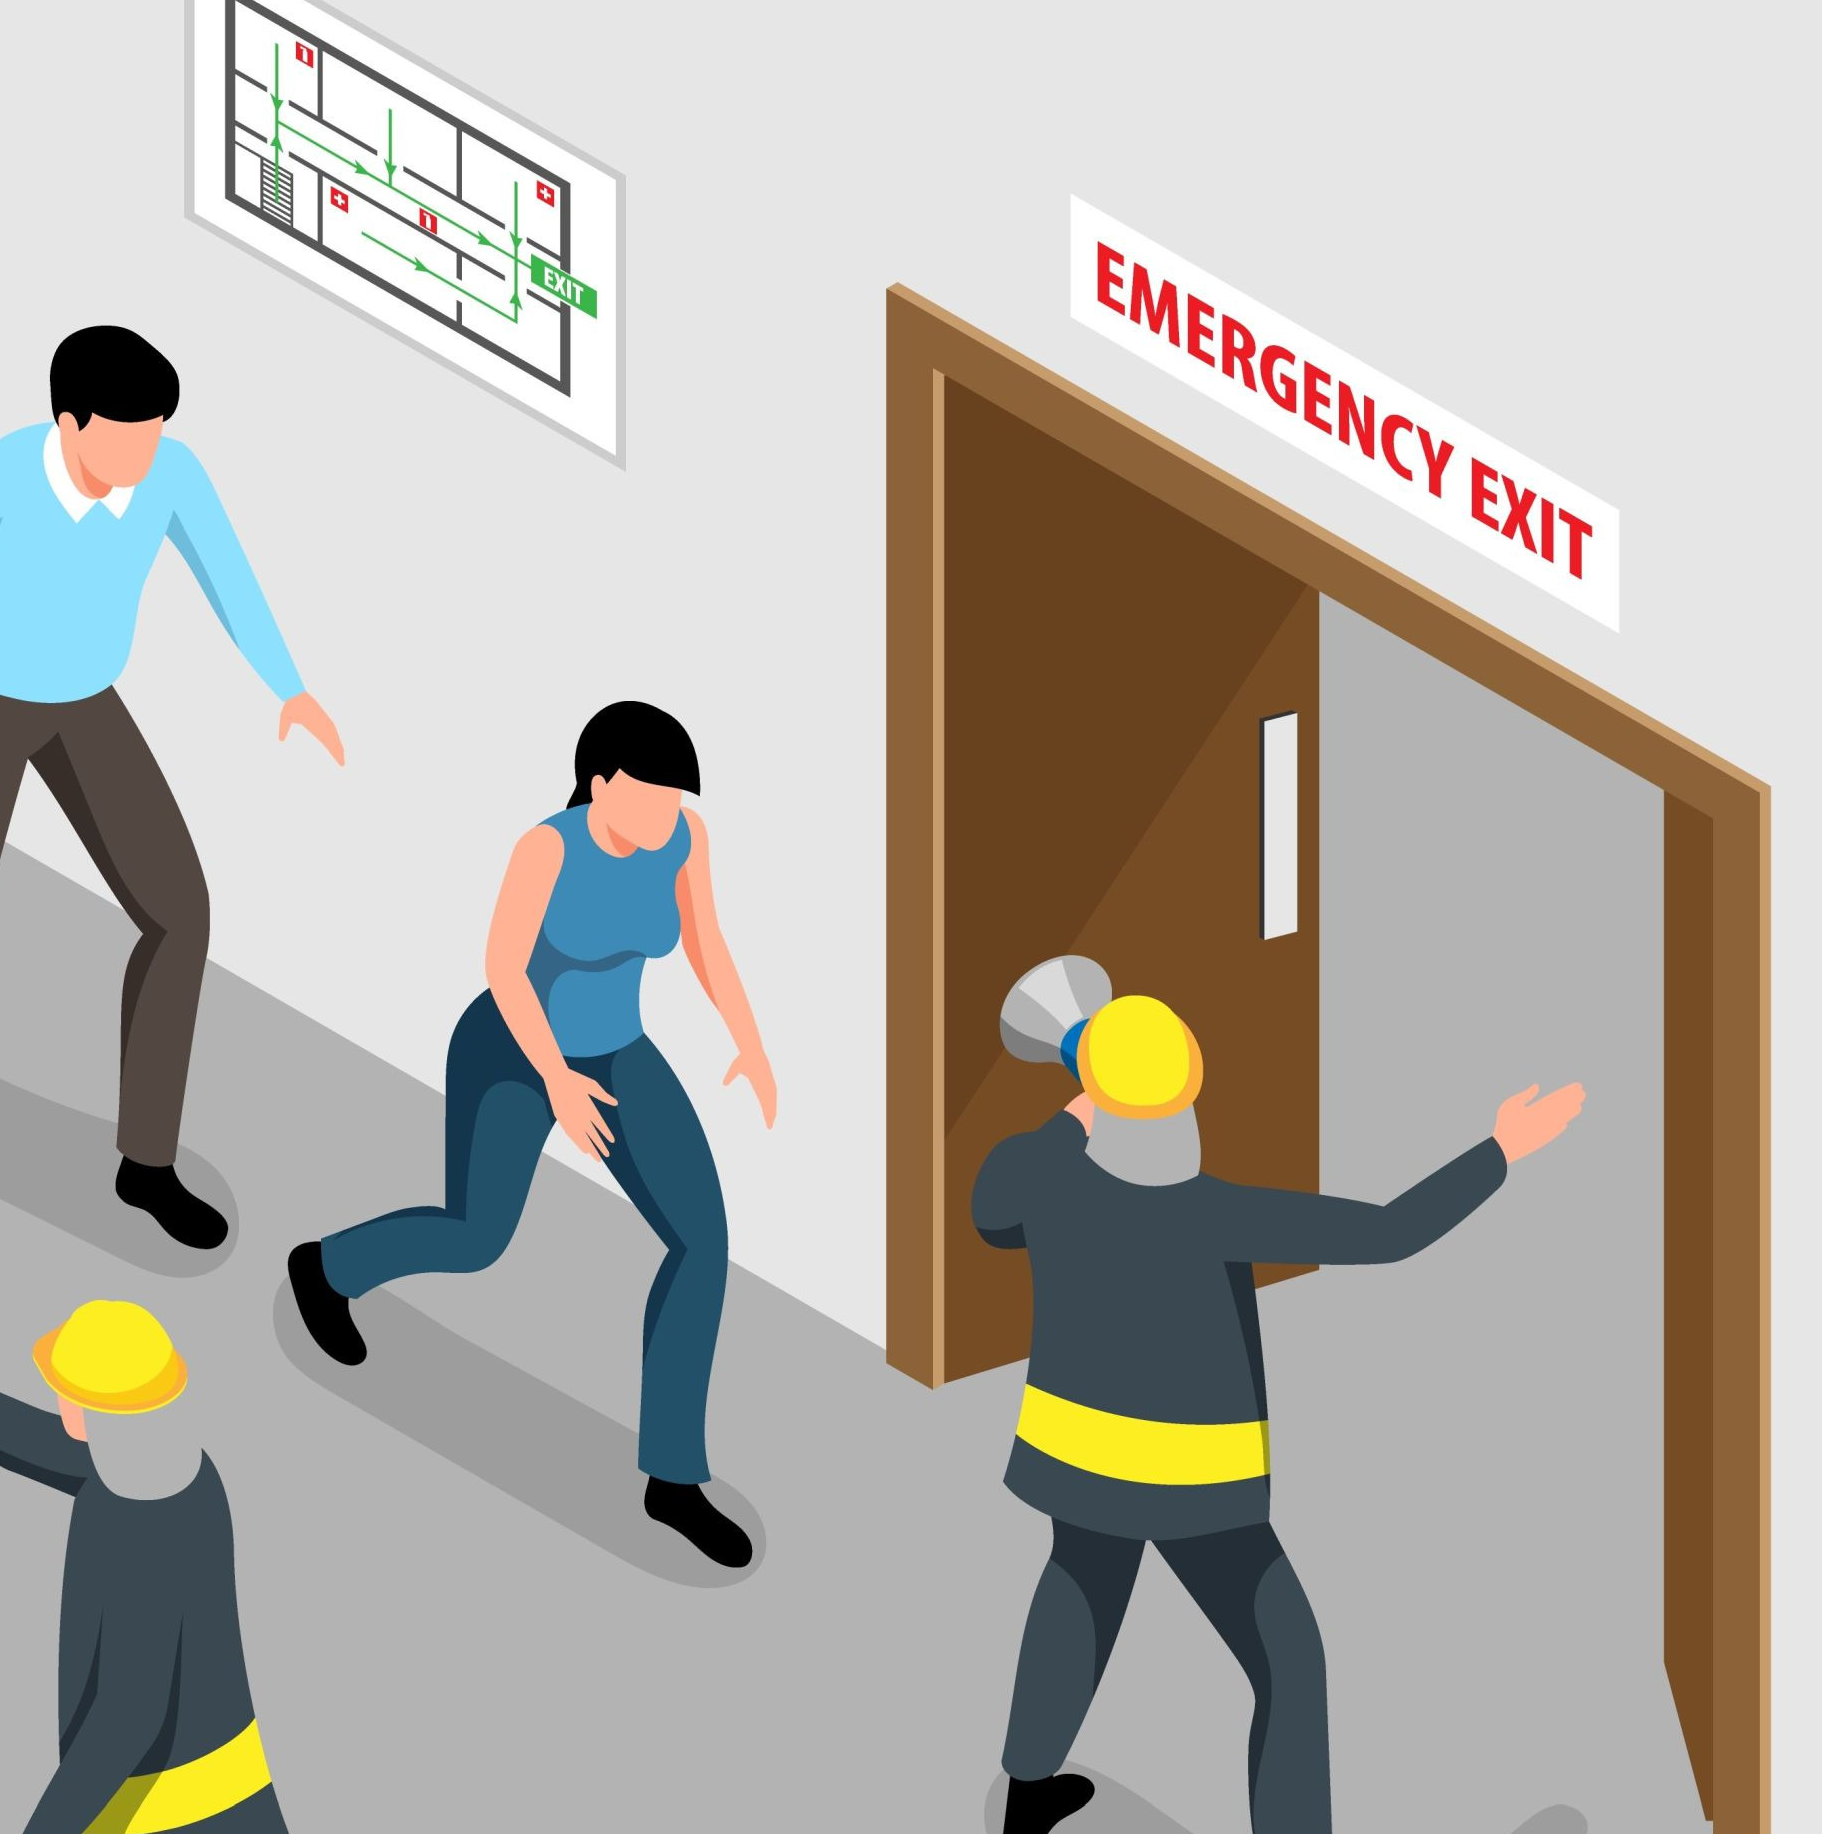 Koordynator ewakuacji w pracy — dlaczego jest niezbędny każdego dnia?